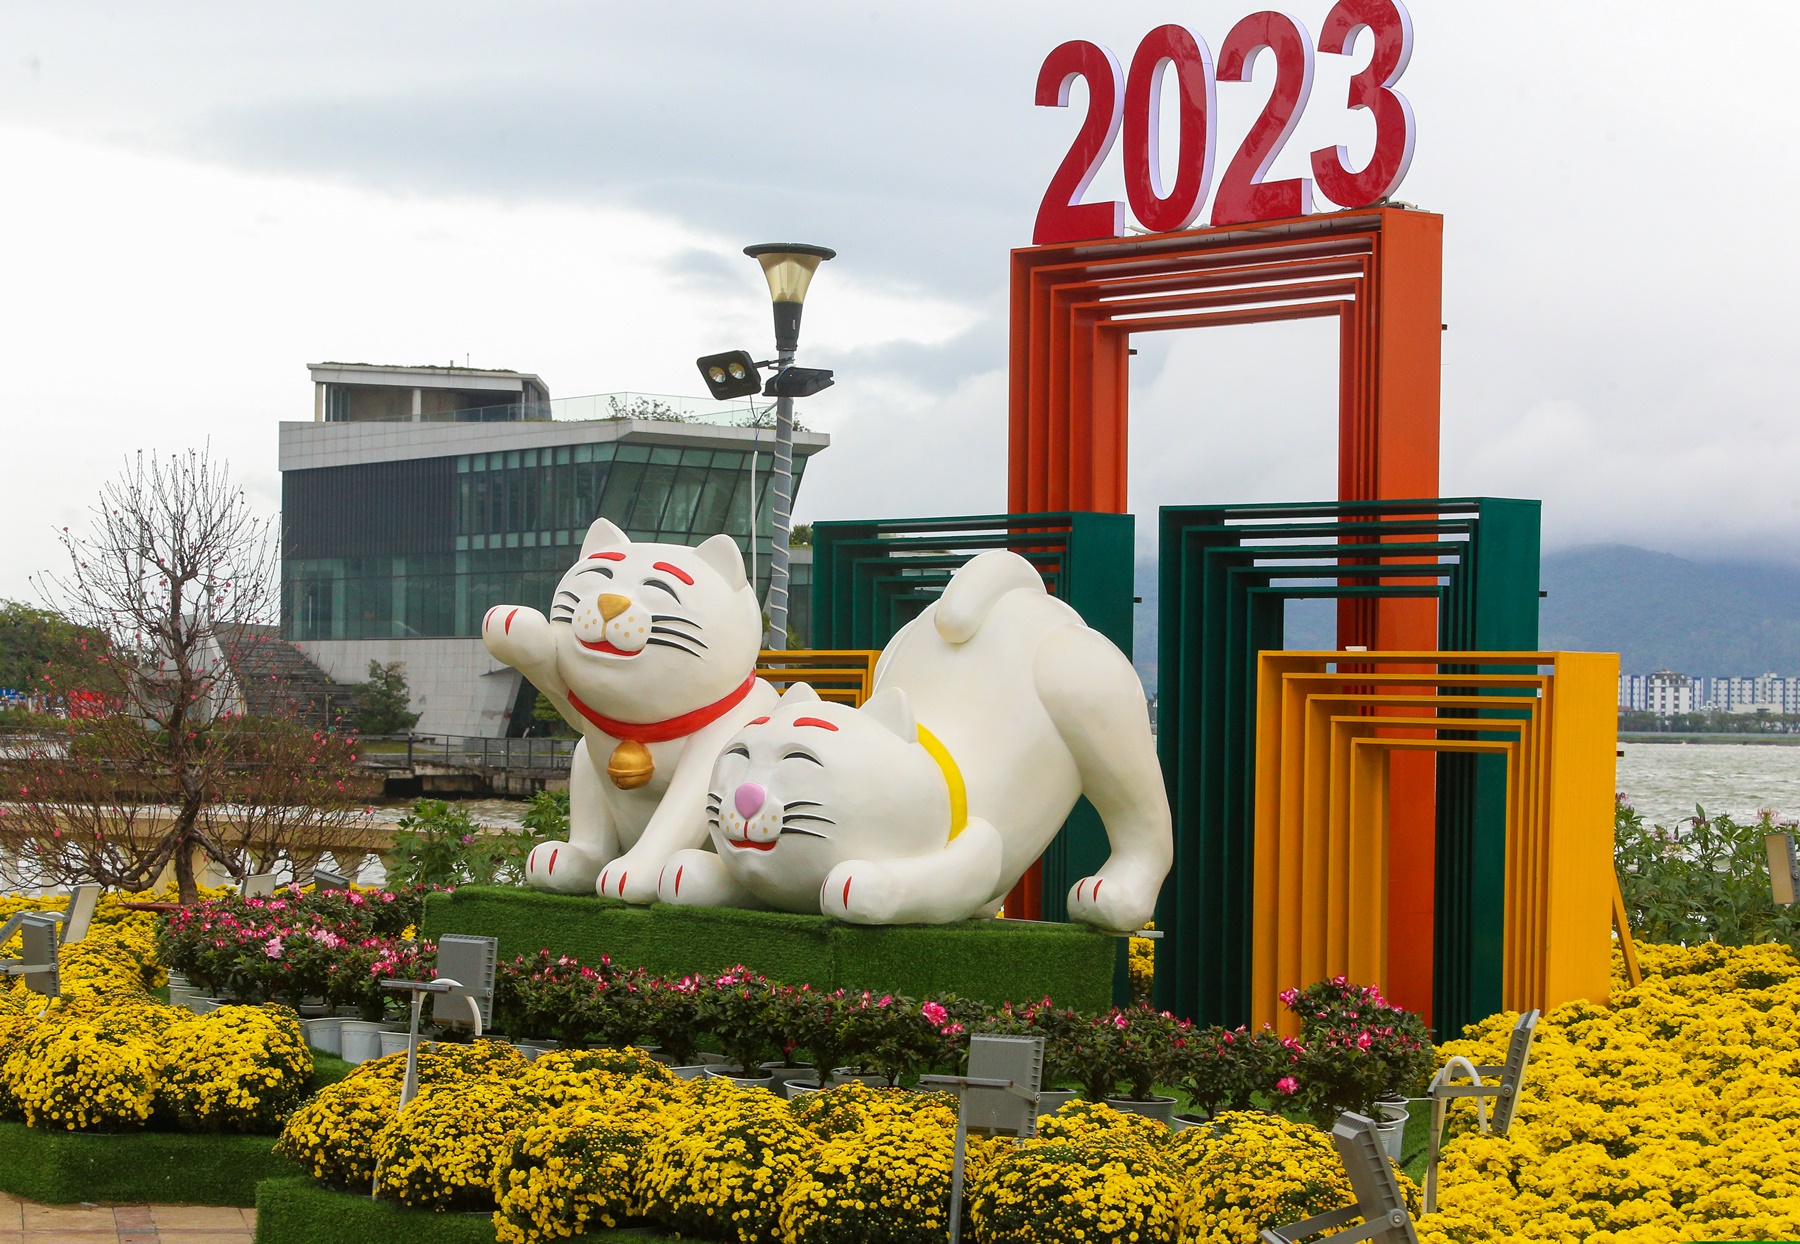 Lộ diện đàn linh vật mèo đủ sắc thái tại đường hoa Xuân Đà Nẵng - Ảnh 3.